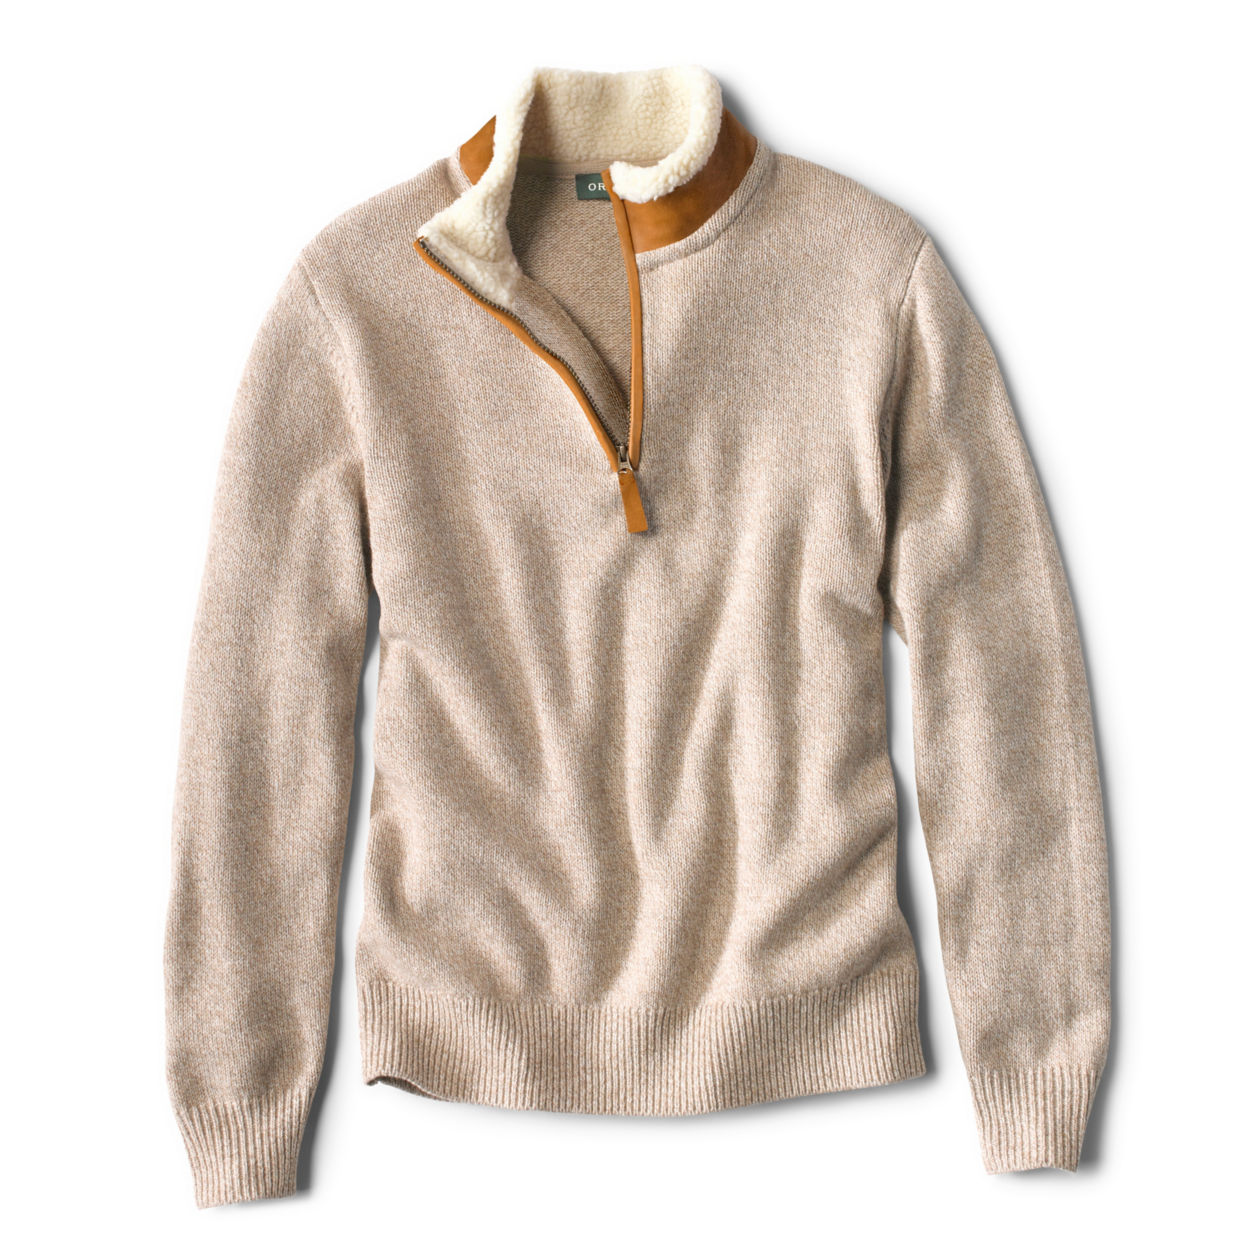 Stowe Quarter-Zip Sweater